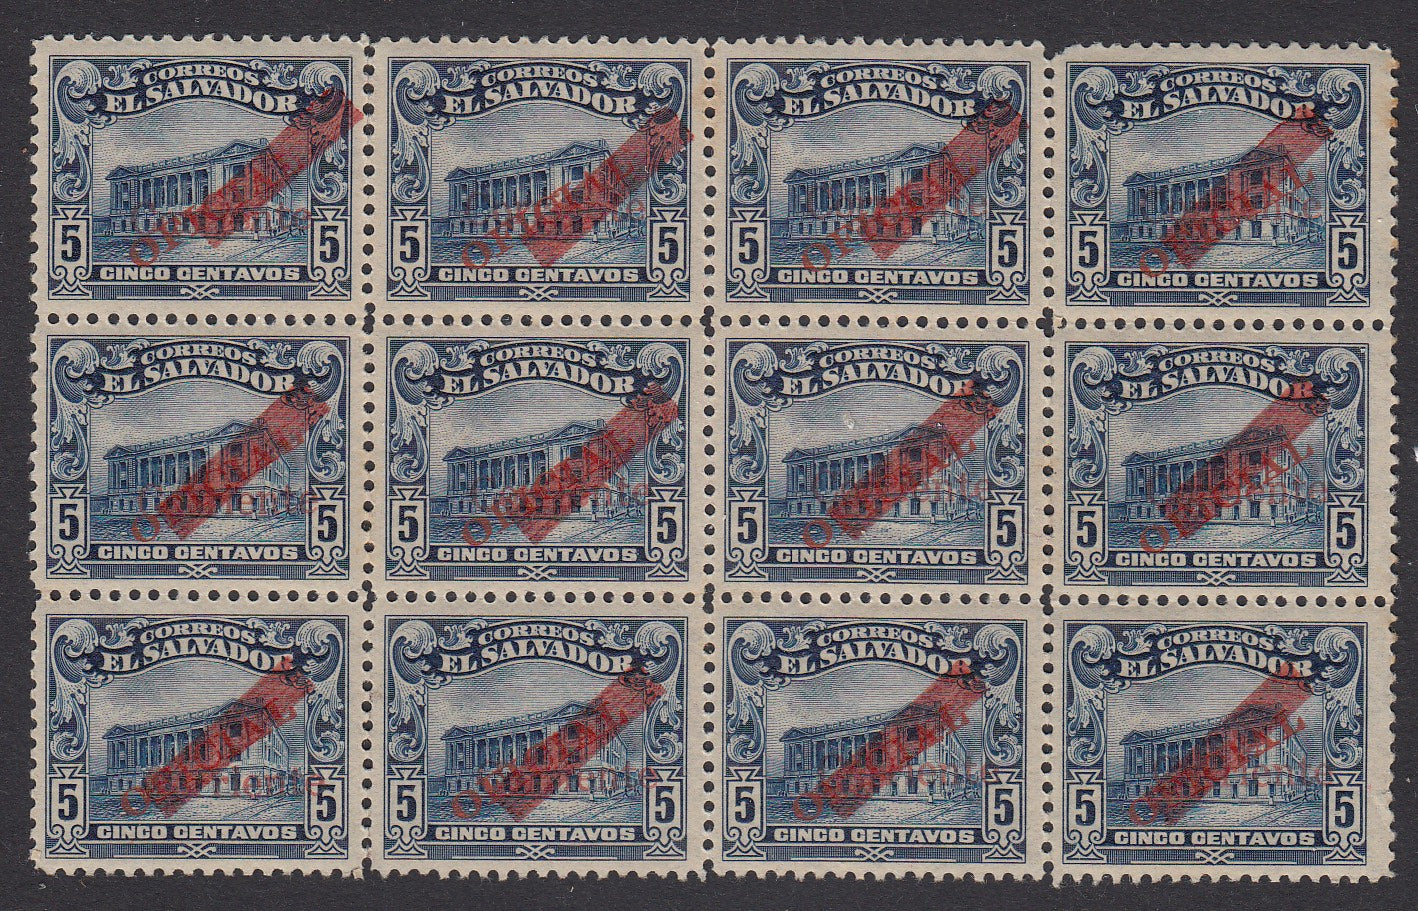 El Salvador 1917 5c Deep Blue Corriente Overprint Block MNH. Scott 450